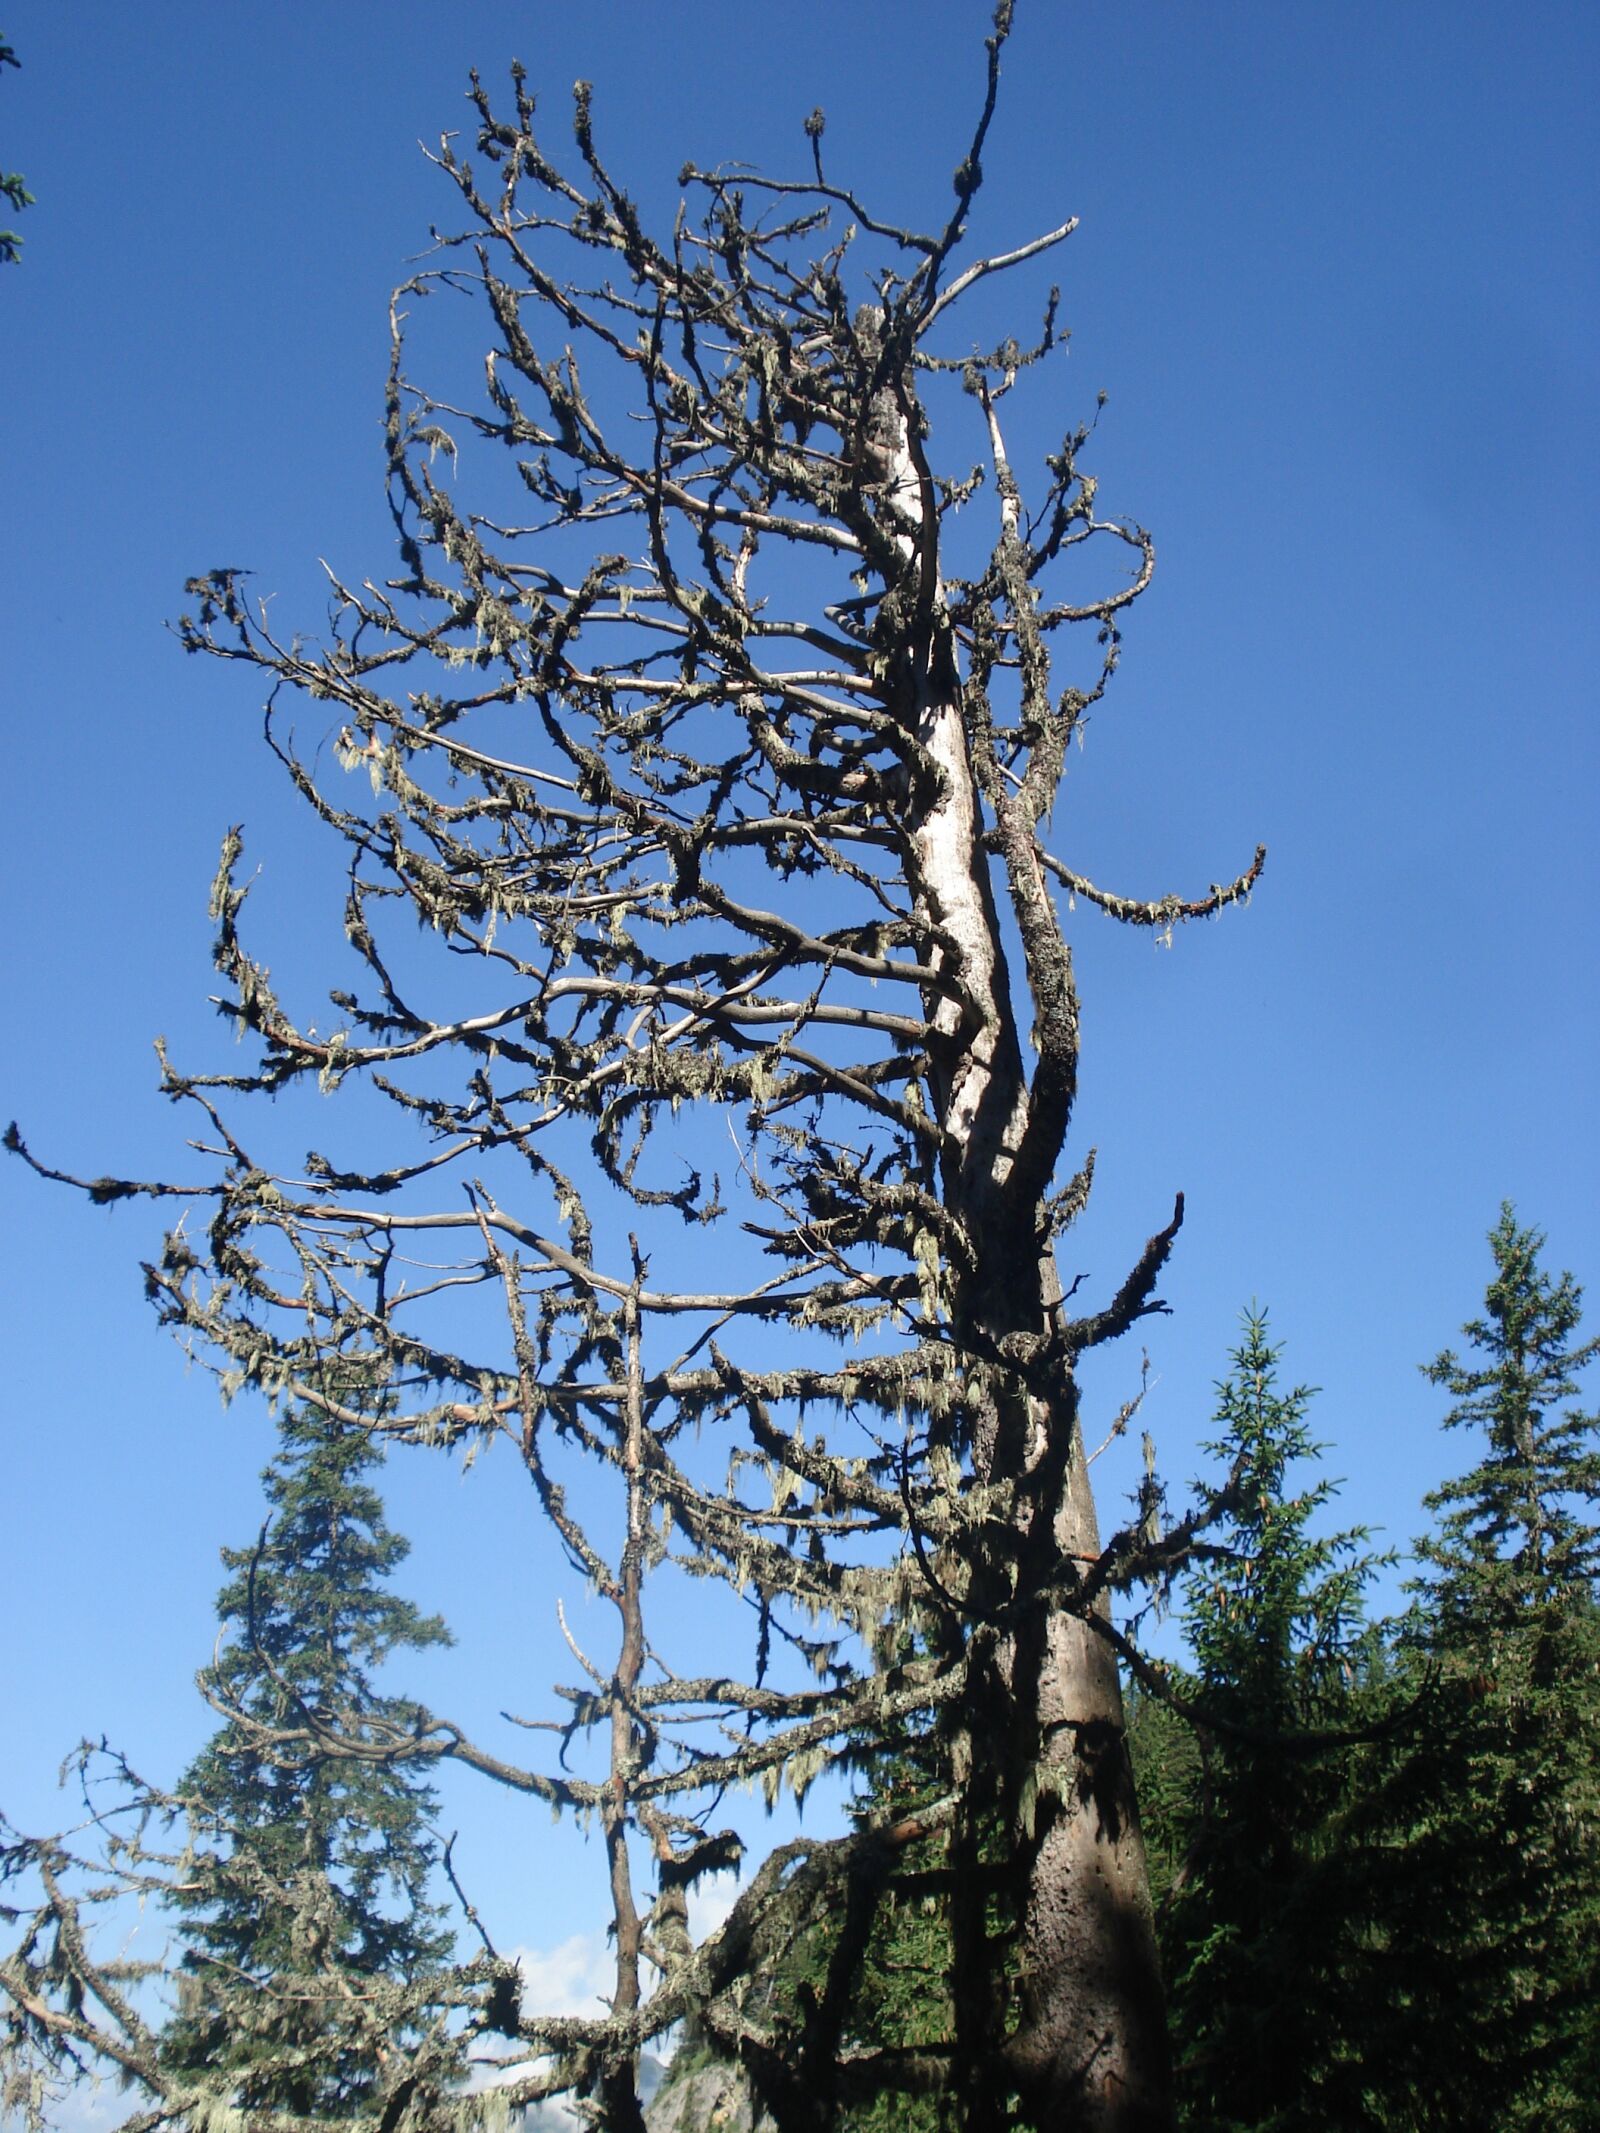 Sony DSC-W50 sample photo. Nature, tree, scrawny tree photography